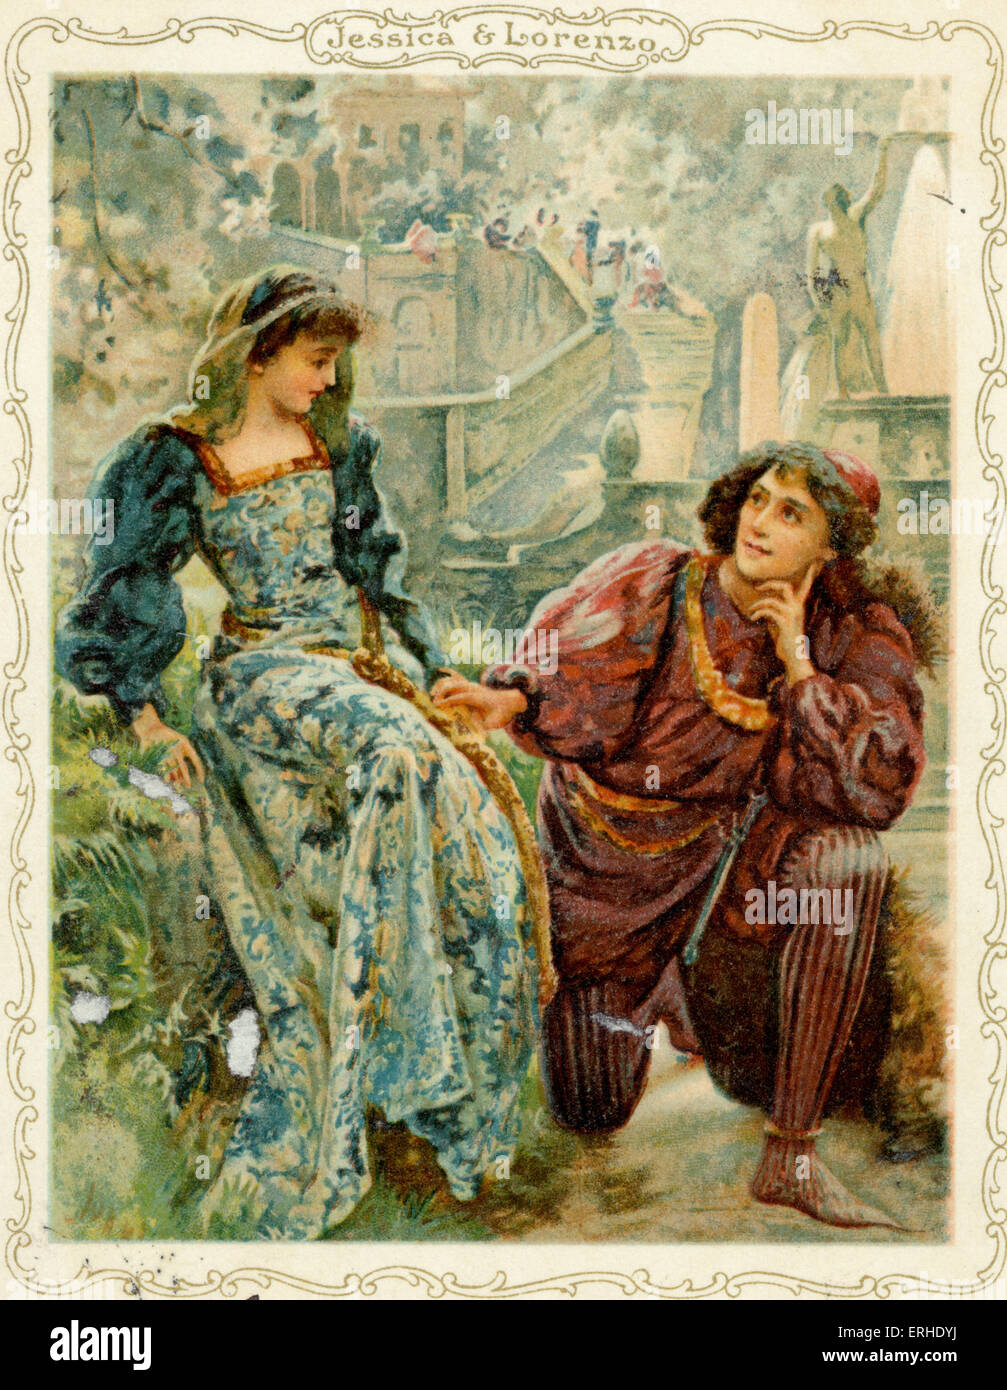 William Shakespeare, jouer le Marchand de Venise scène avec Jessica et Lorenzo carte postale Allemande Banque D'Images